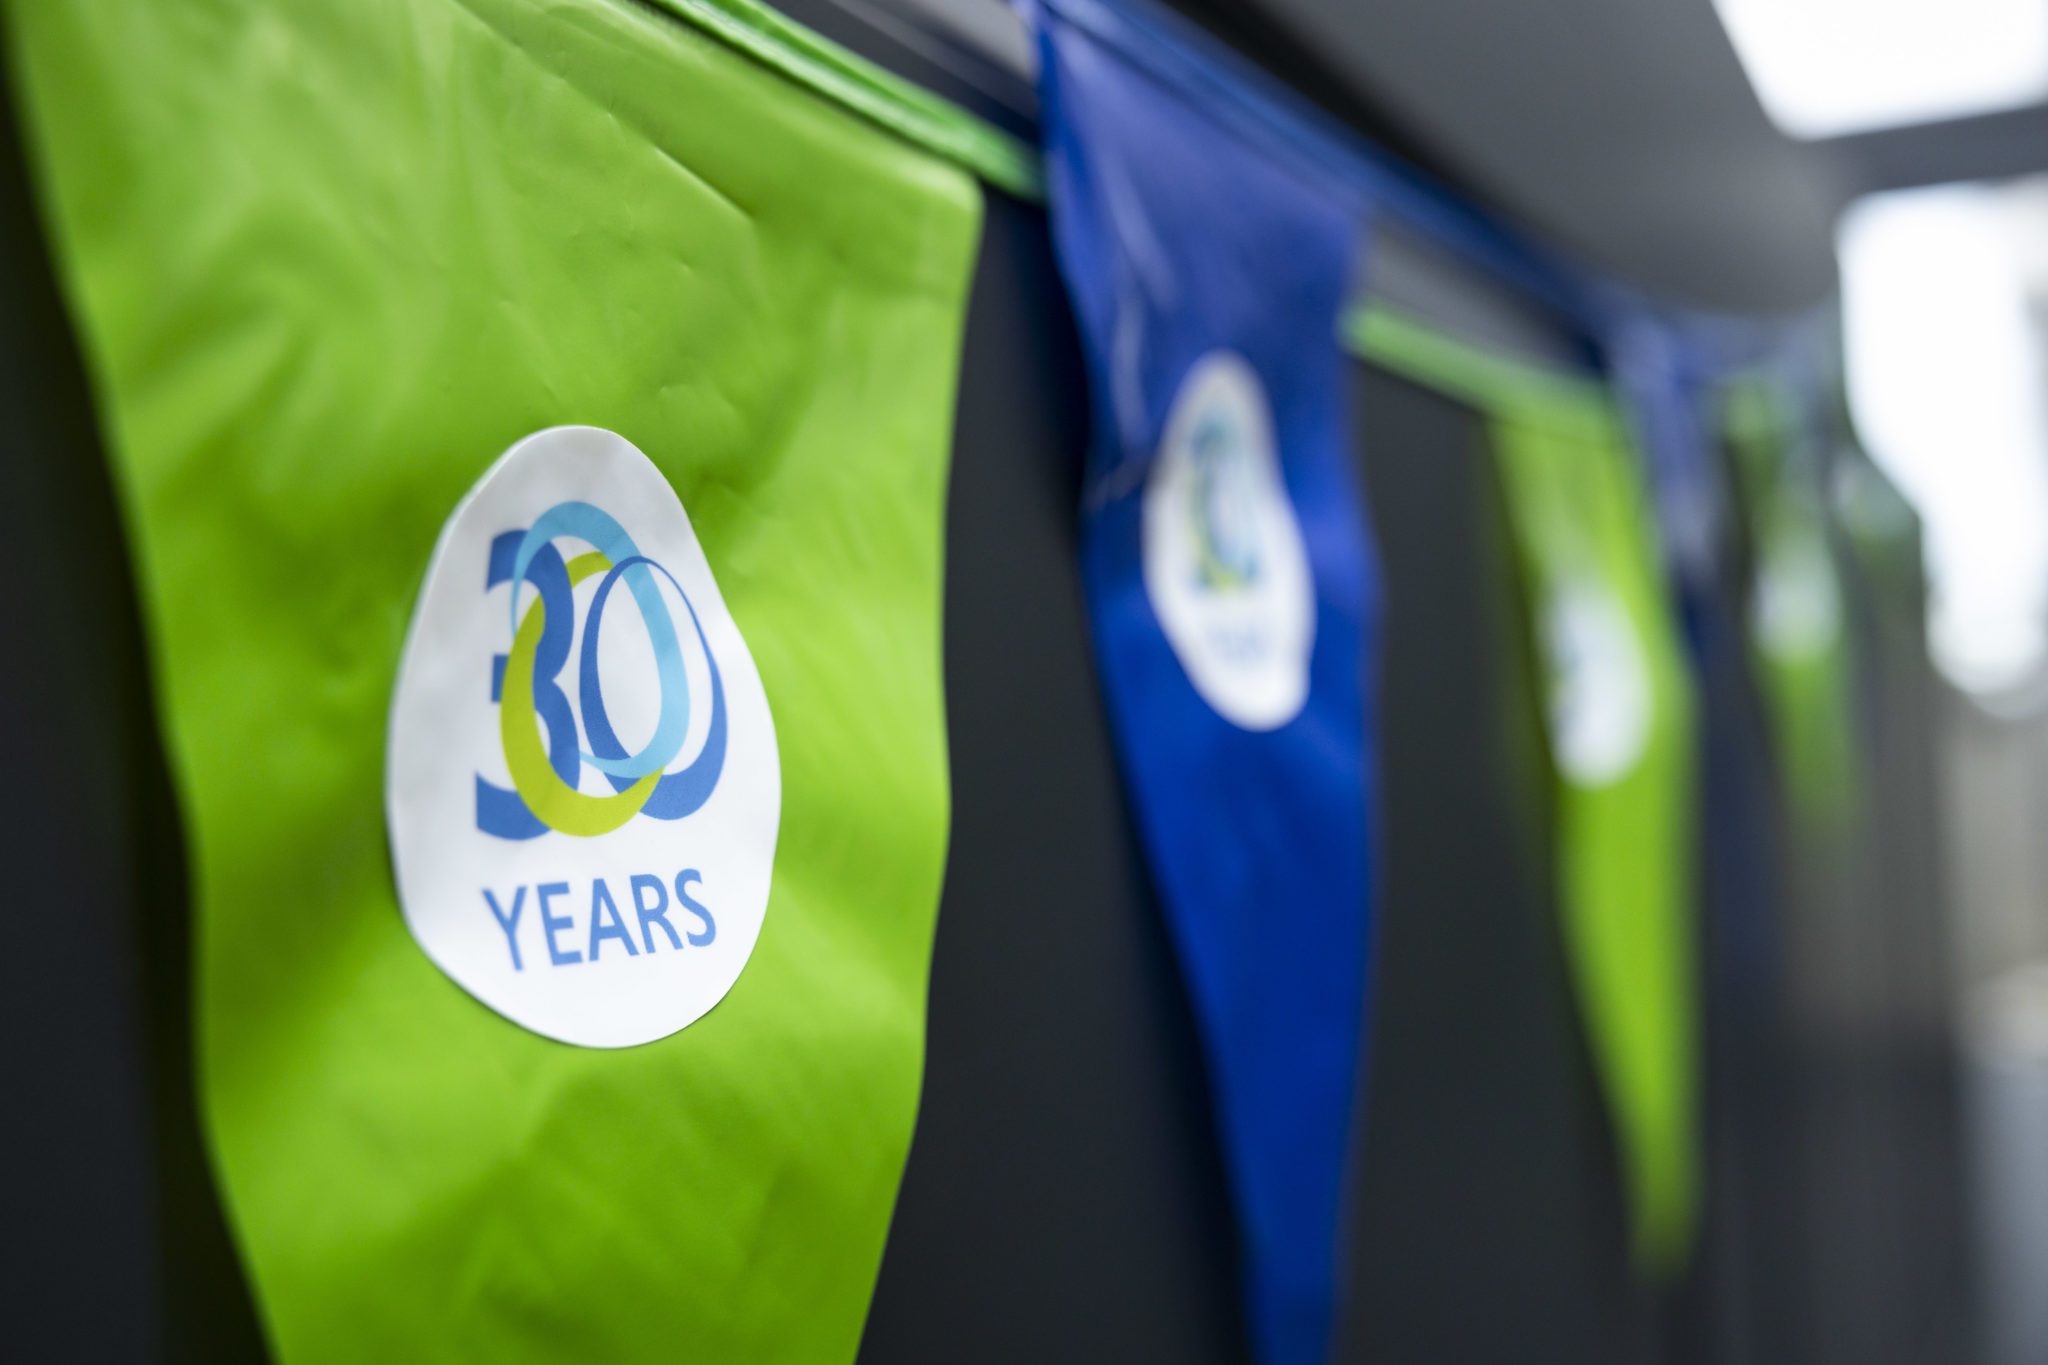 Stavangerregionens Europakontor feirer 30 år i Brussel!